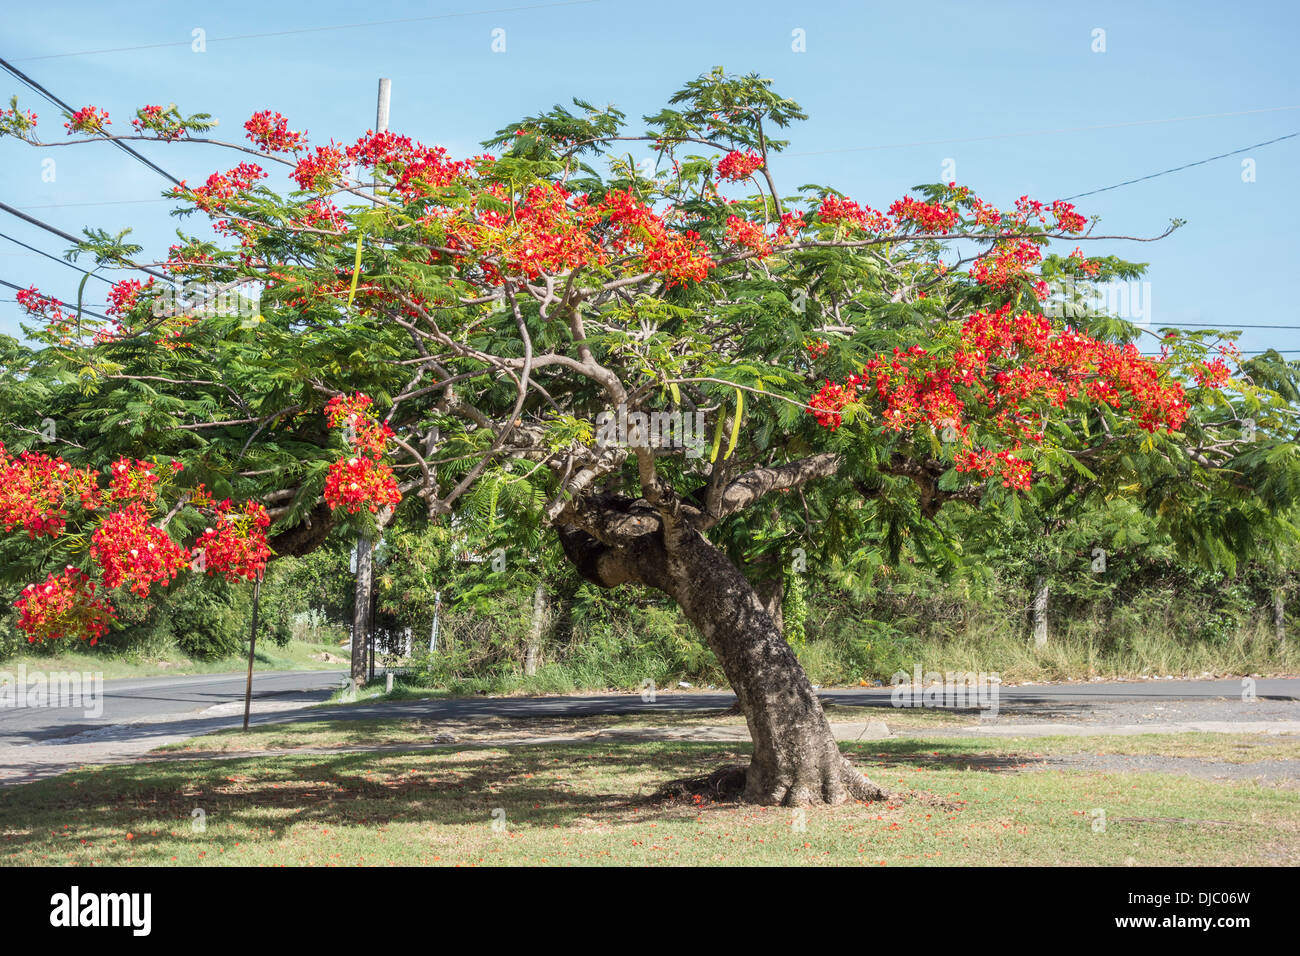 Un Royal Poinciana, ou arbre flamboyant, Delonix regis Fabeceae en fleurs sur l'île de Sainte Croix, Îles Vierges des États-Unis. Banque D'Images